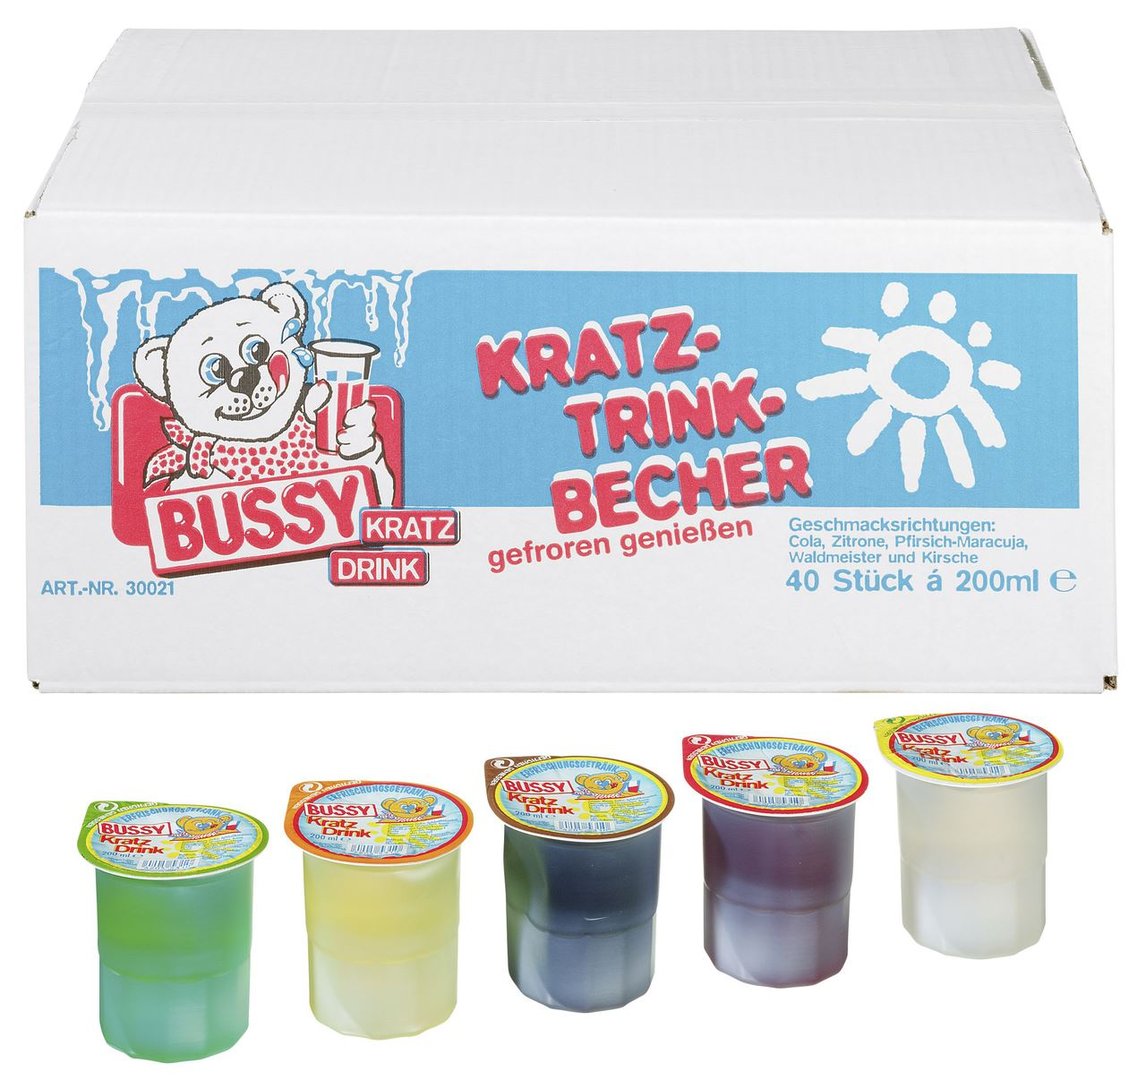 Bussy - Kratzeis Mix Waldfrucht 40 Stück à 200 ml - 8 l Karton